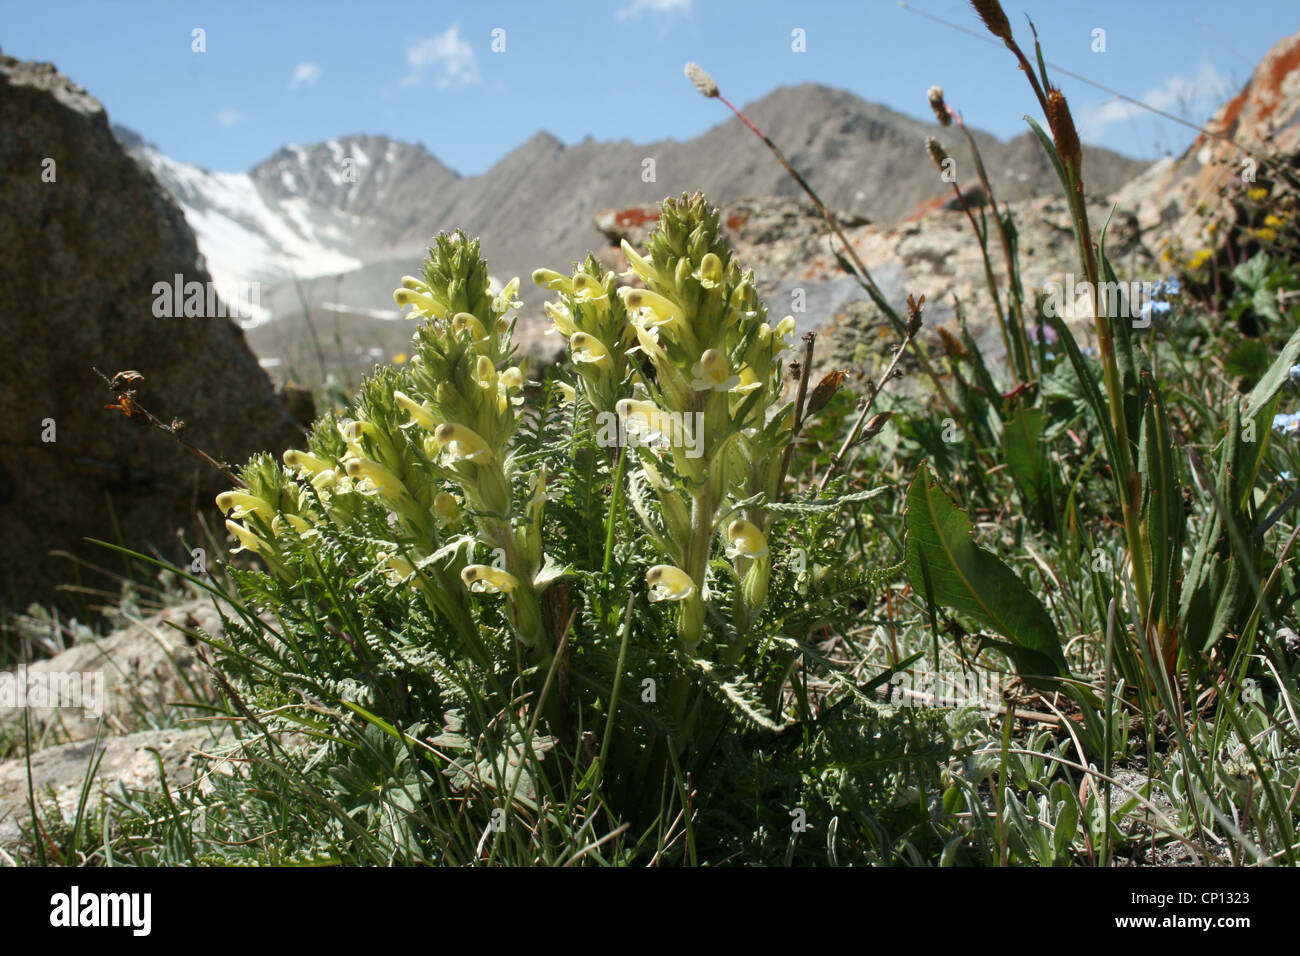 Corydalis sp., Tien-Shan mountains, Kyrgyzstan Stock Photo